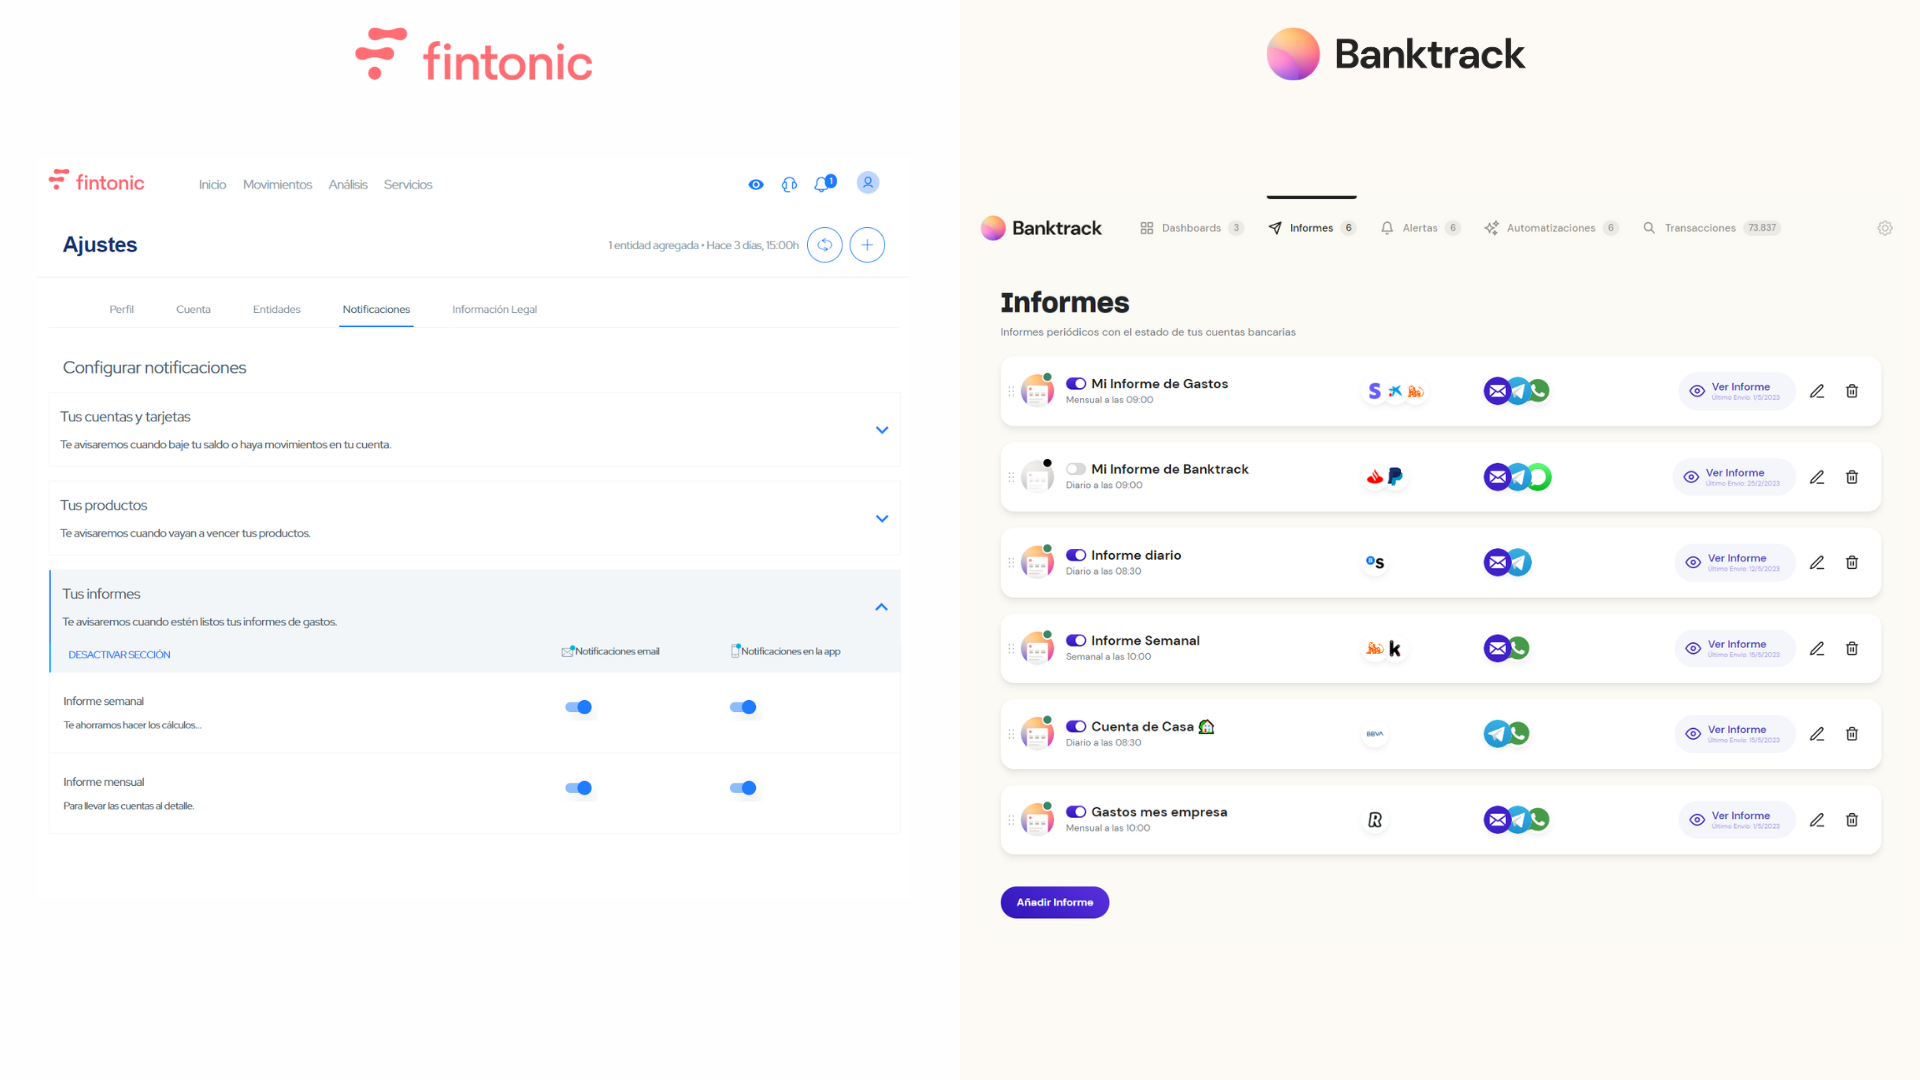 Captura de pantalla comparando las herramientas de finanzas personales fintonic y Banktrack con sus informes